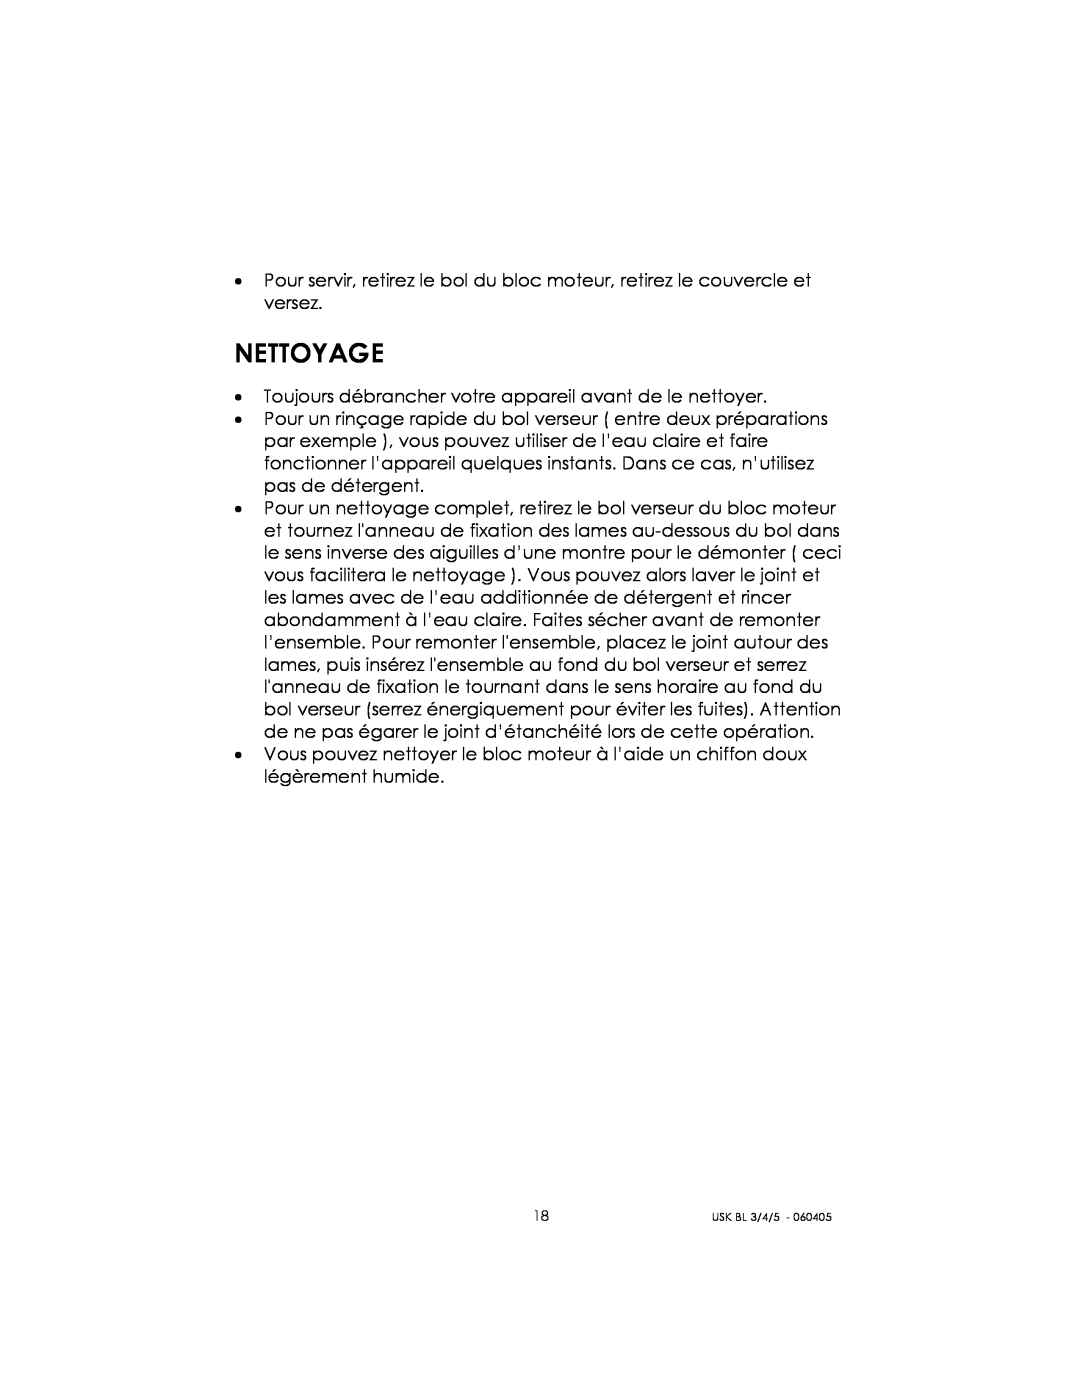 Kalorik USK BL 3/4/5 manual Nettoyage 